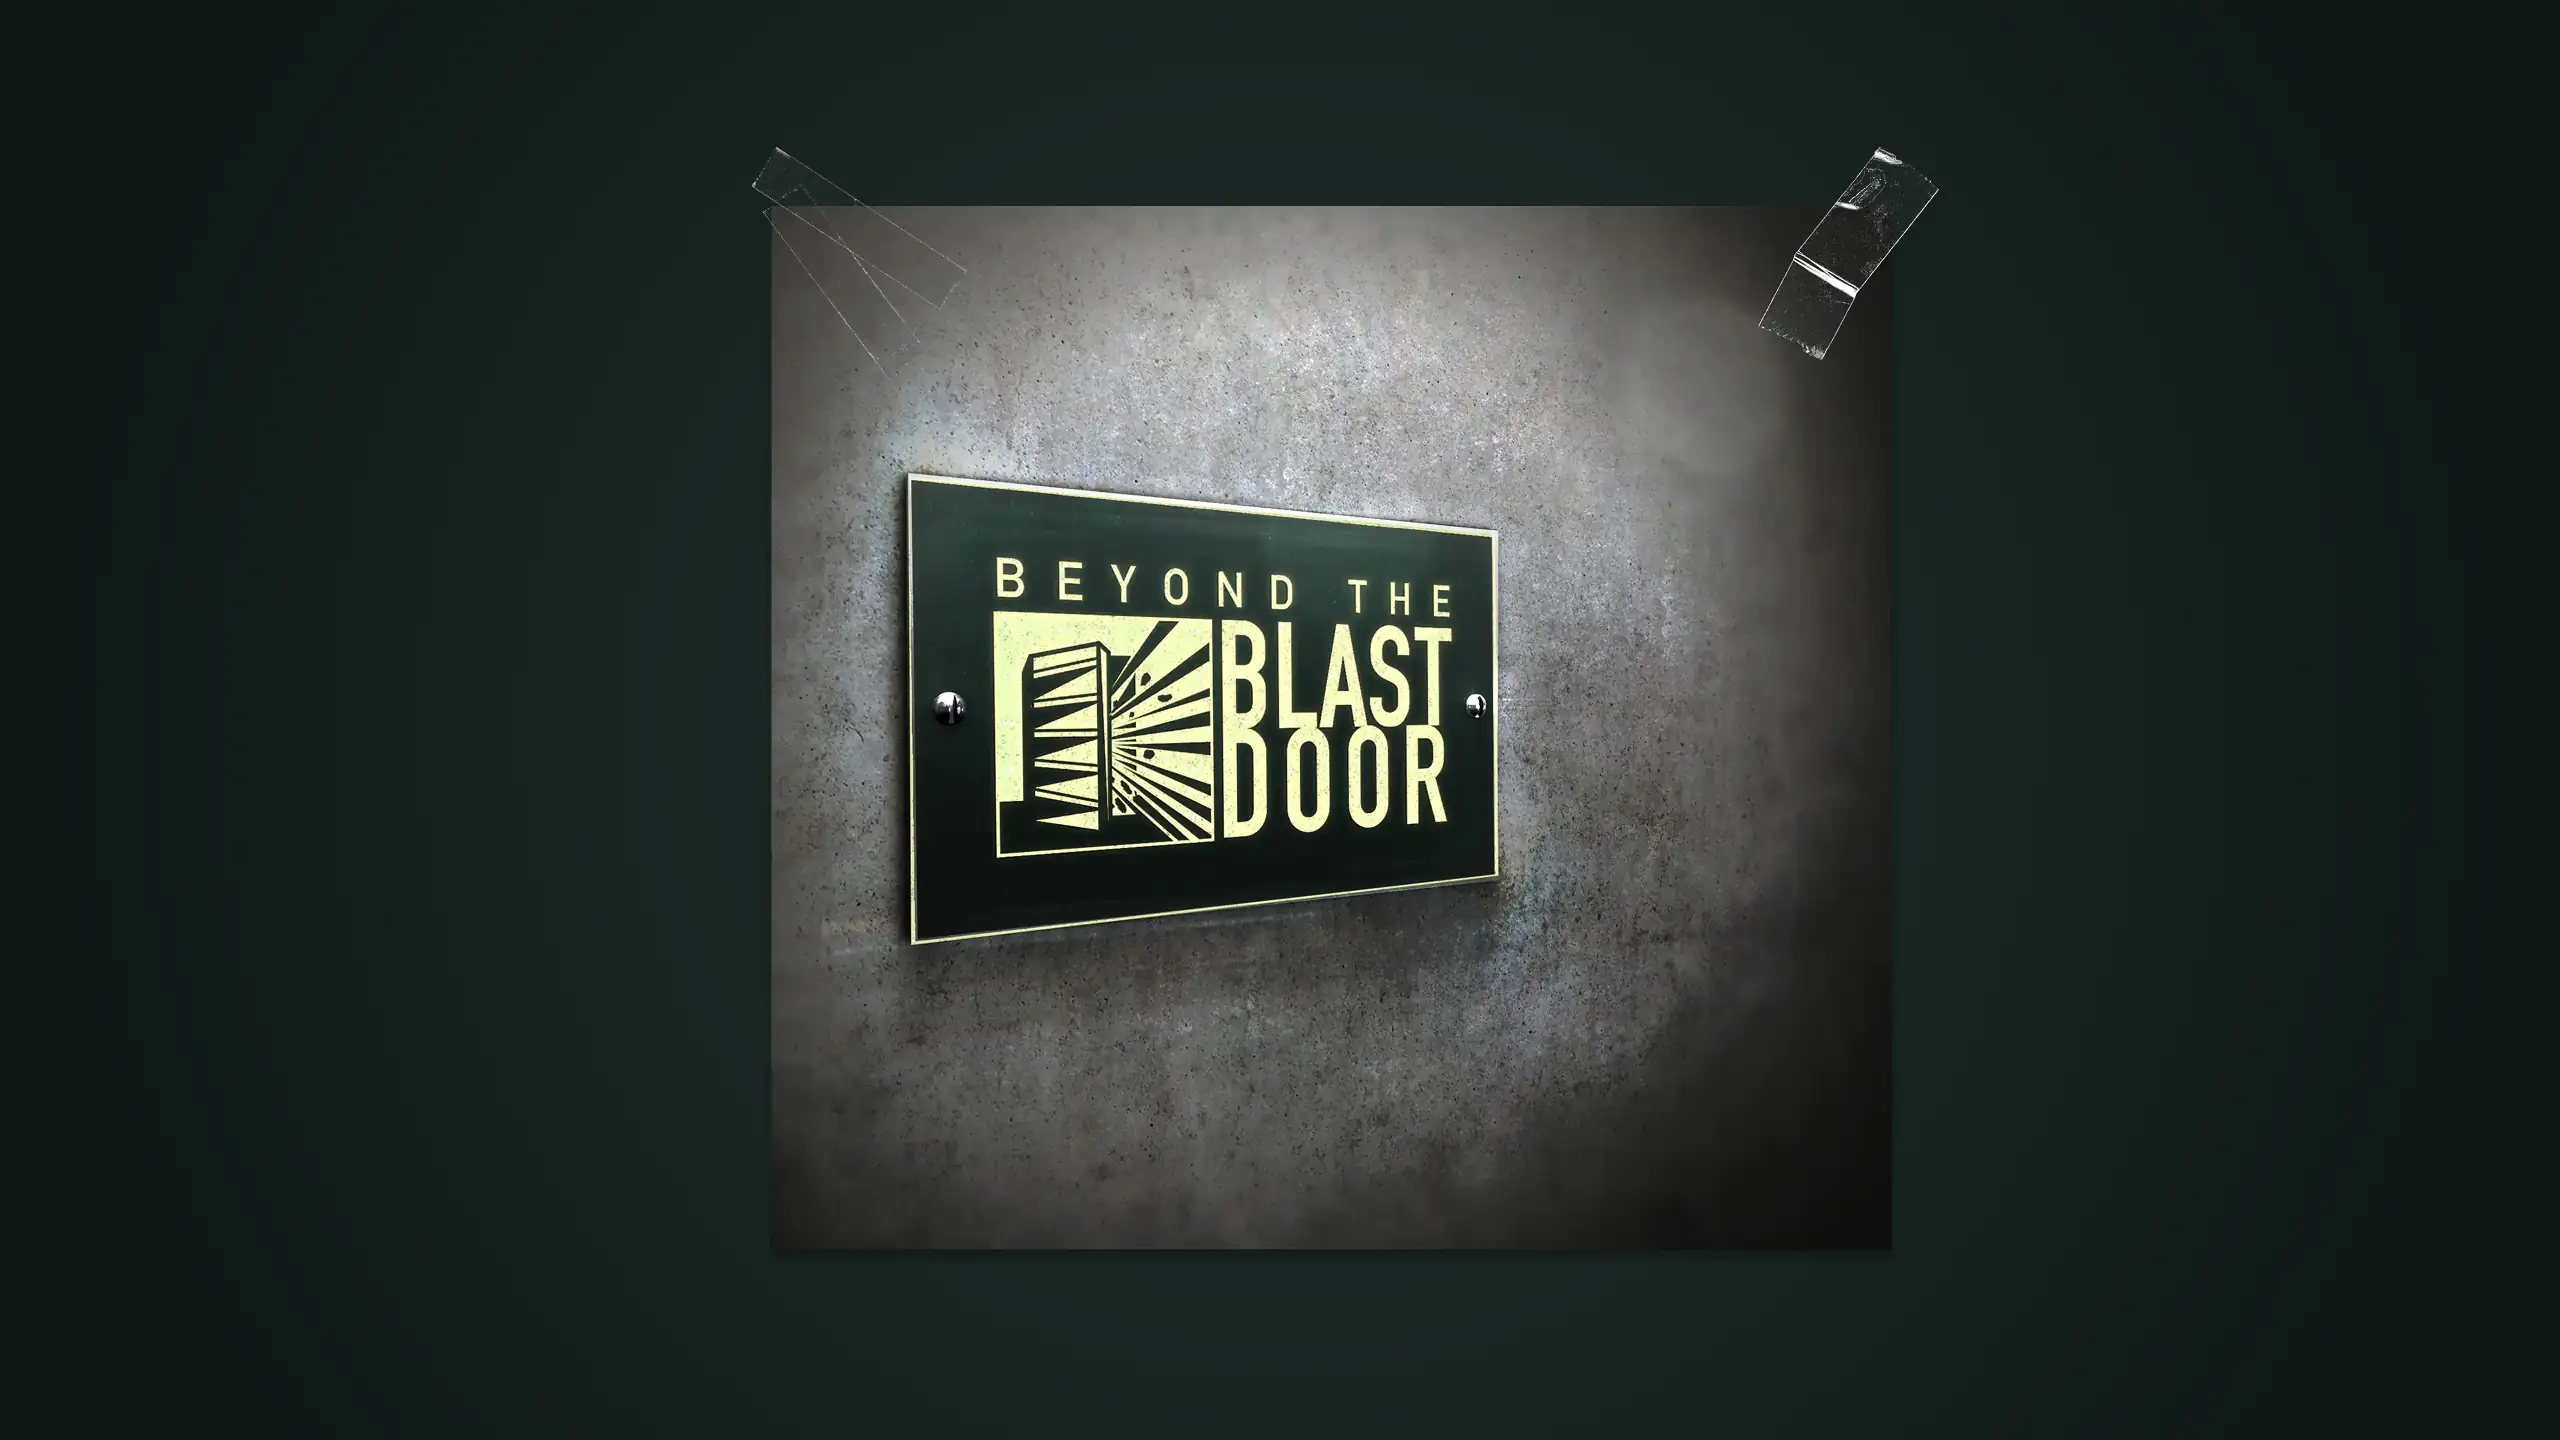 Leuchtendes Logo des Projektes "Beyond the Blastdoor" auf dunkelgrünem Hintergrund